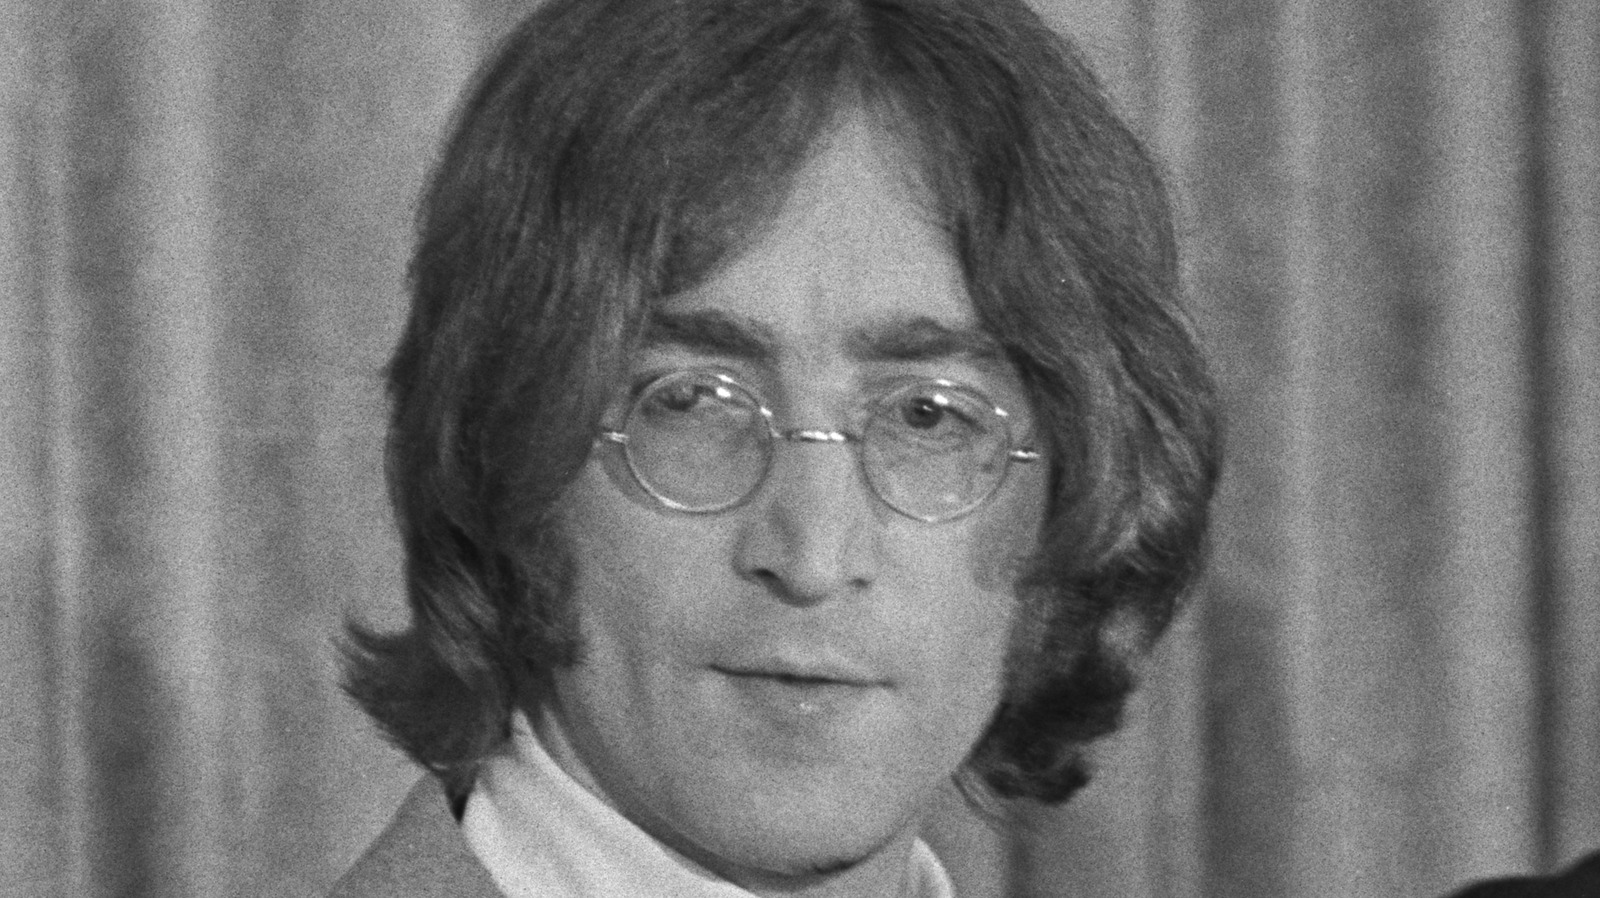 John Lennon Woman